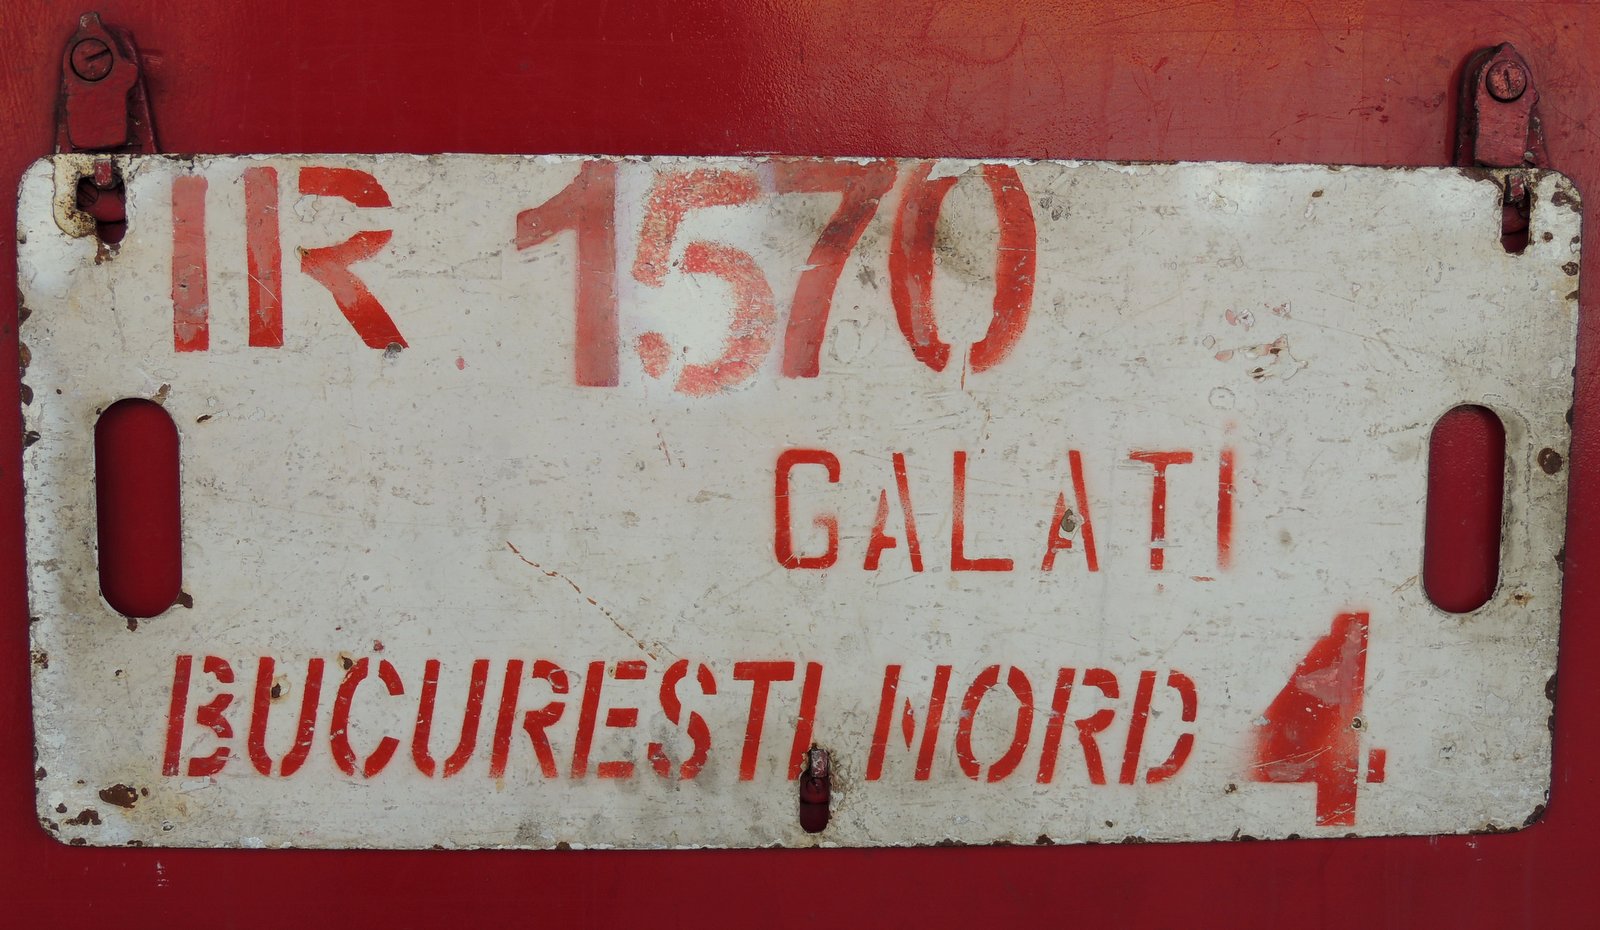 IR 1570 Galati - Bucuresti Nord